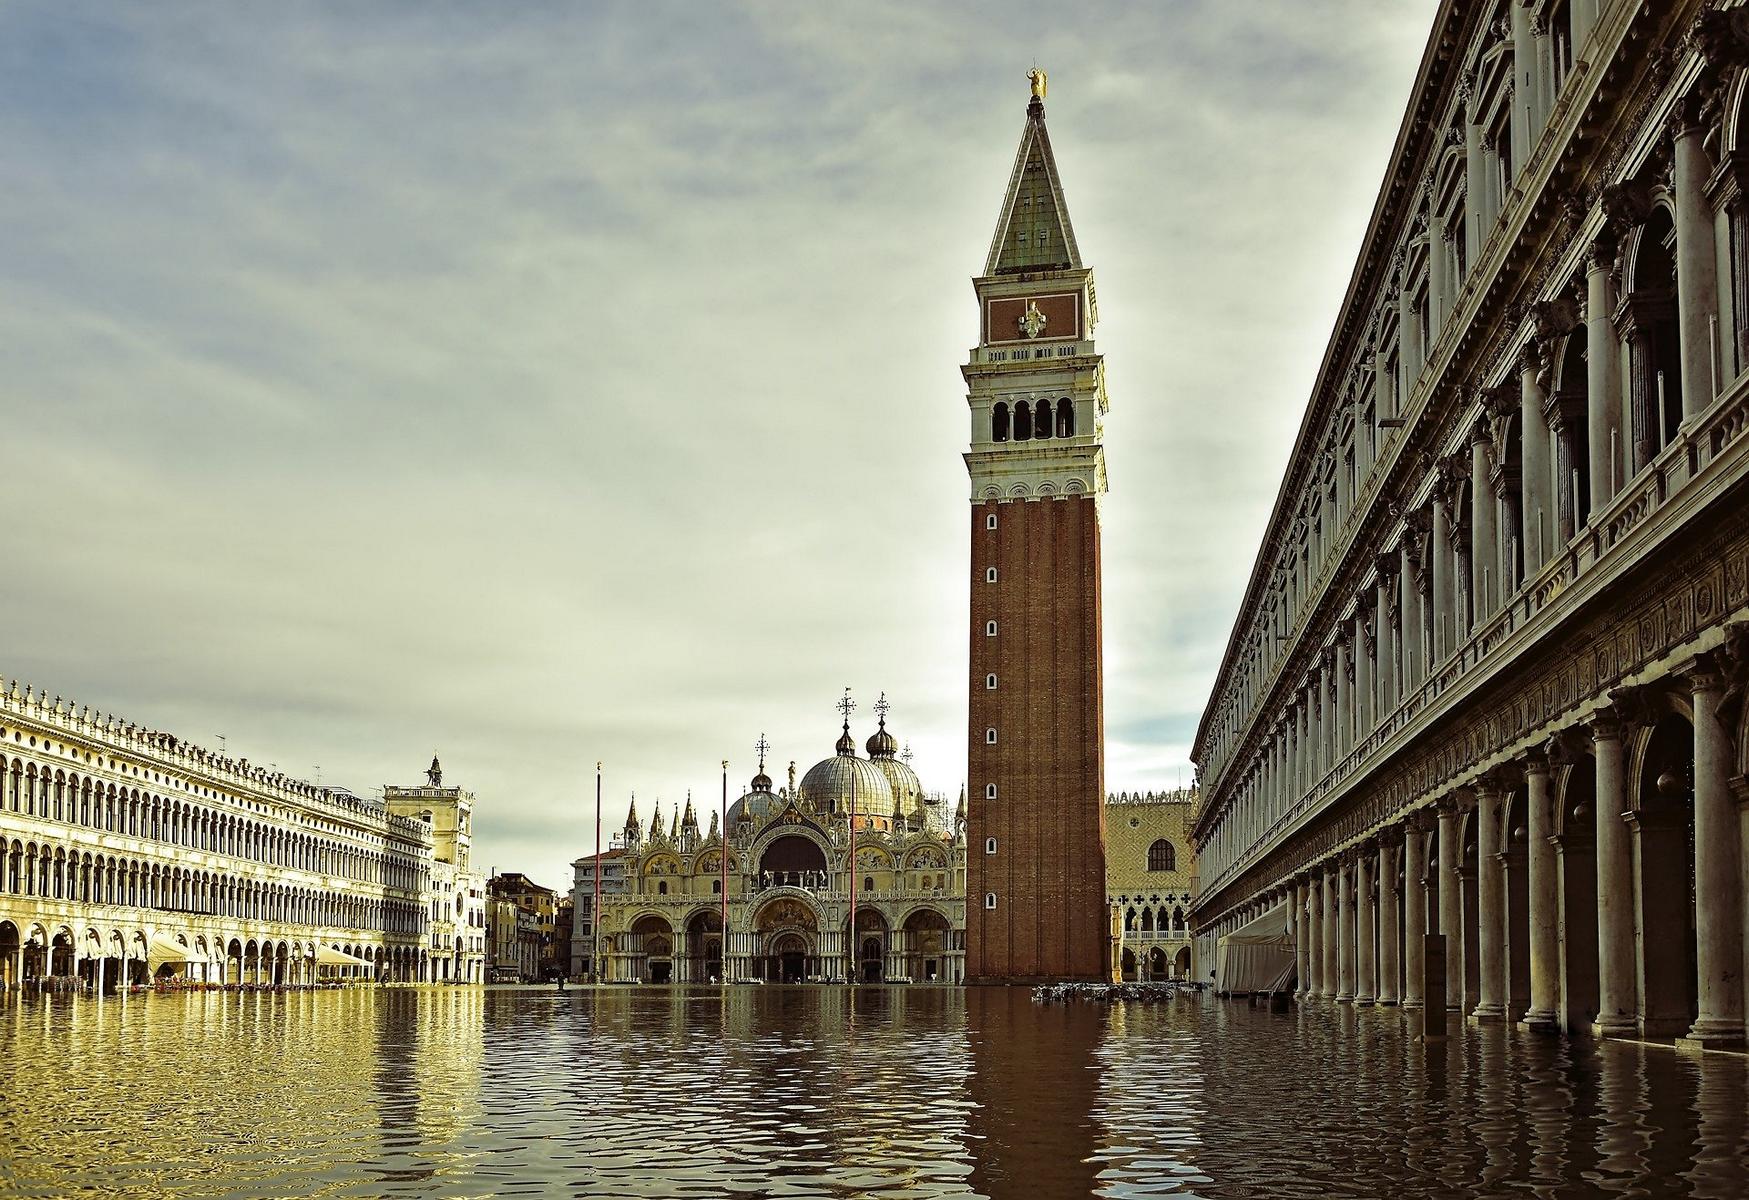 Meine persönliche Packliste für Venedig, damit Du bei Deiner Reise an alles denkst!